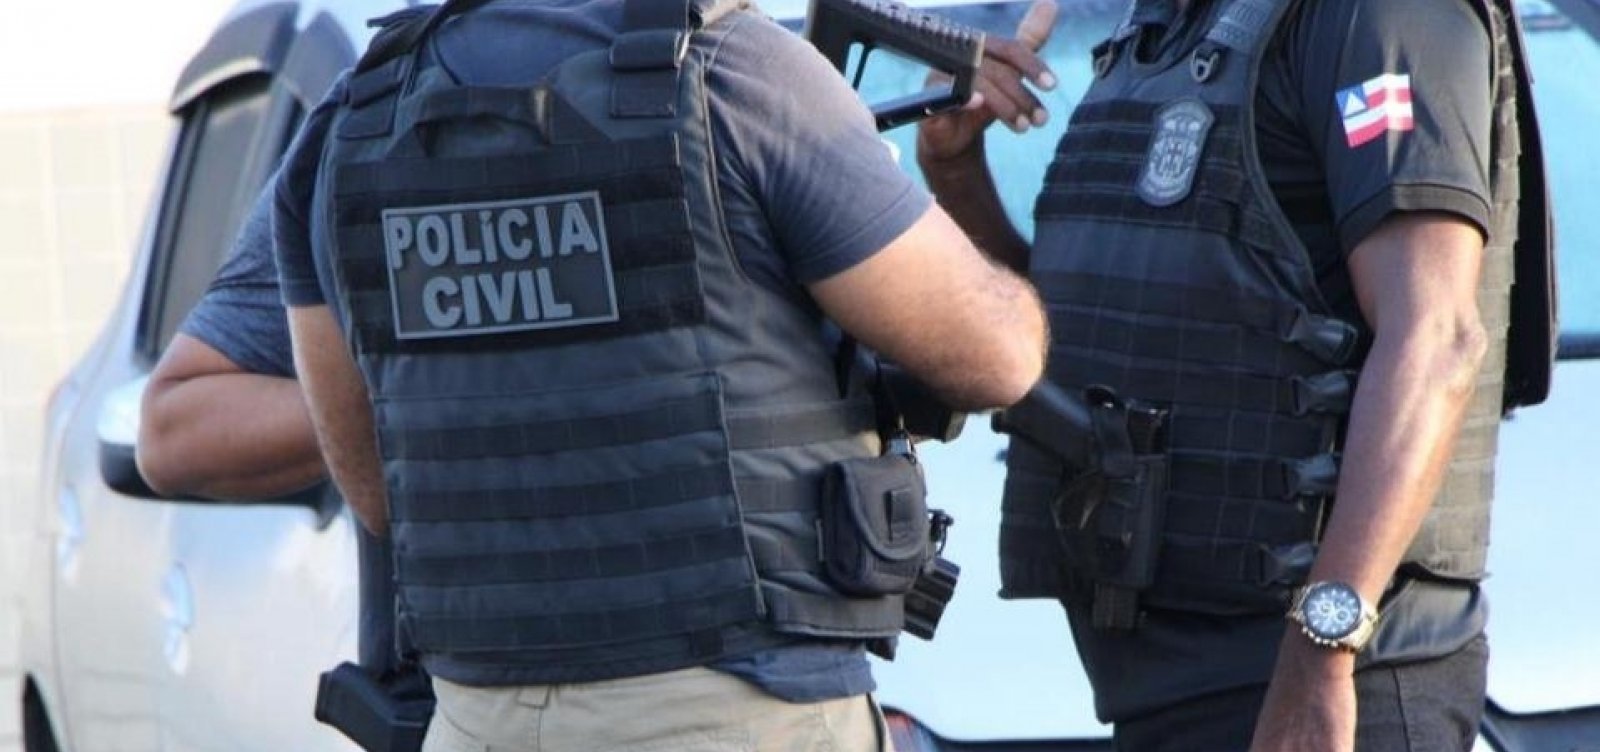 Quadrilha que ameaçou matar policial civil é presa em Condeúba